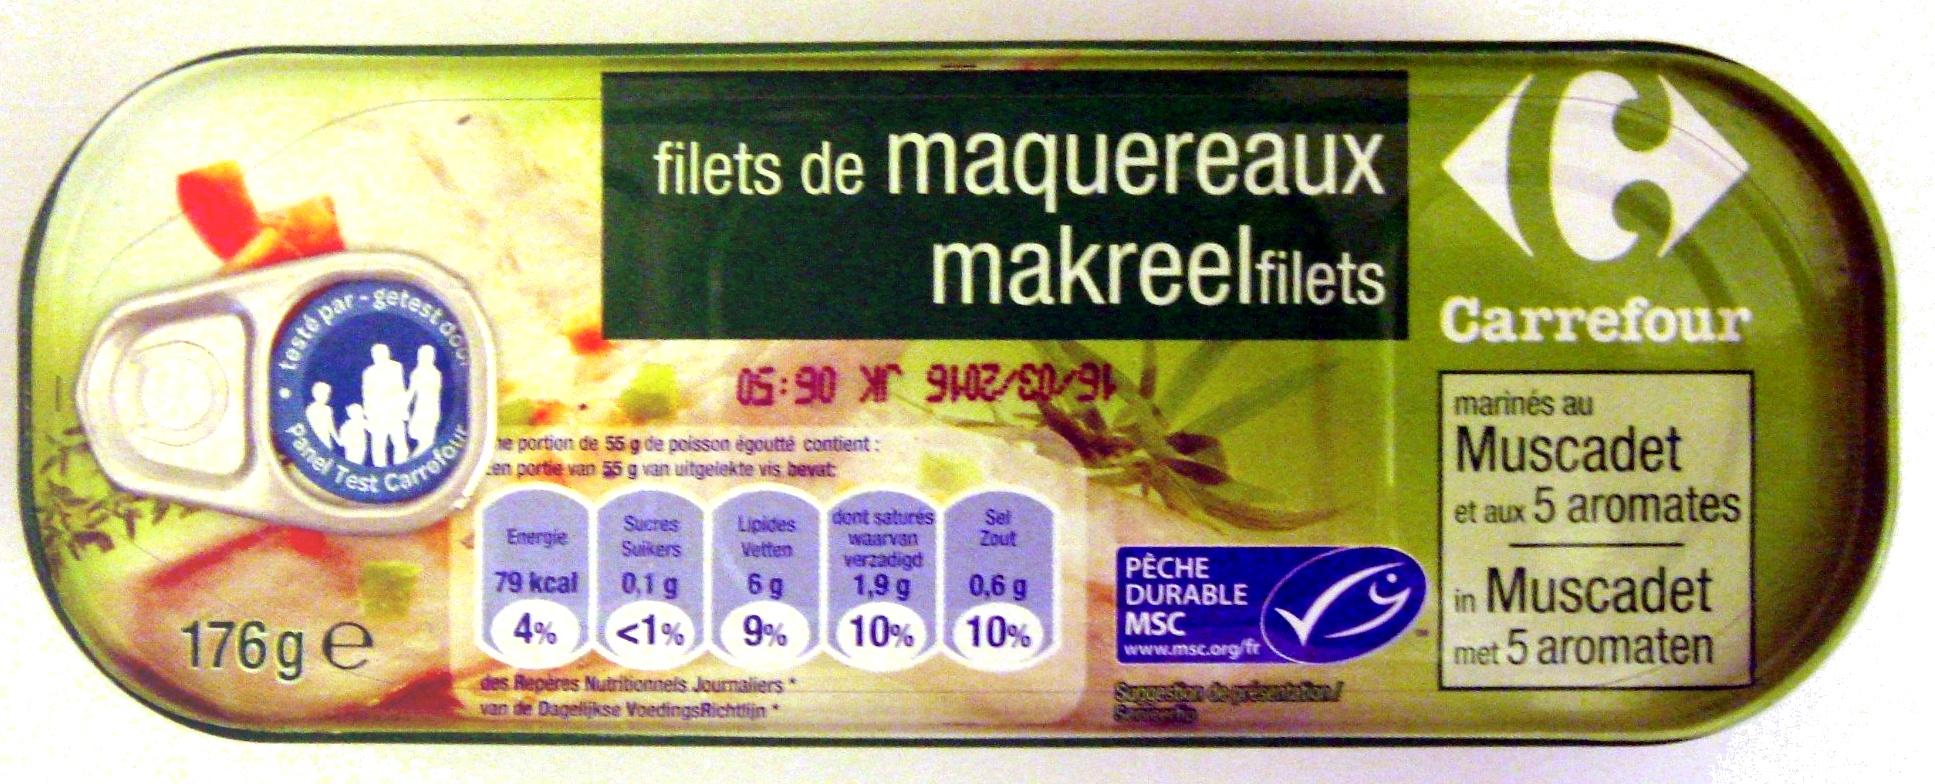 Filets de maquereaux (marinés au Muscadet et aux 5 aromates) - Product - fr